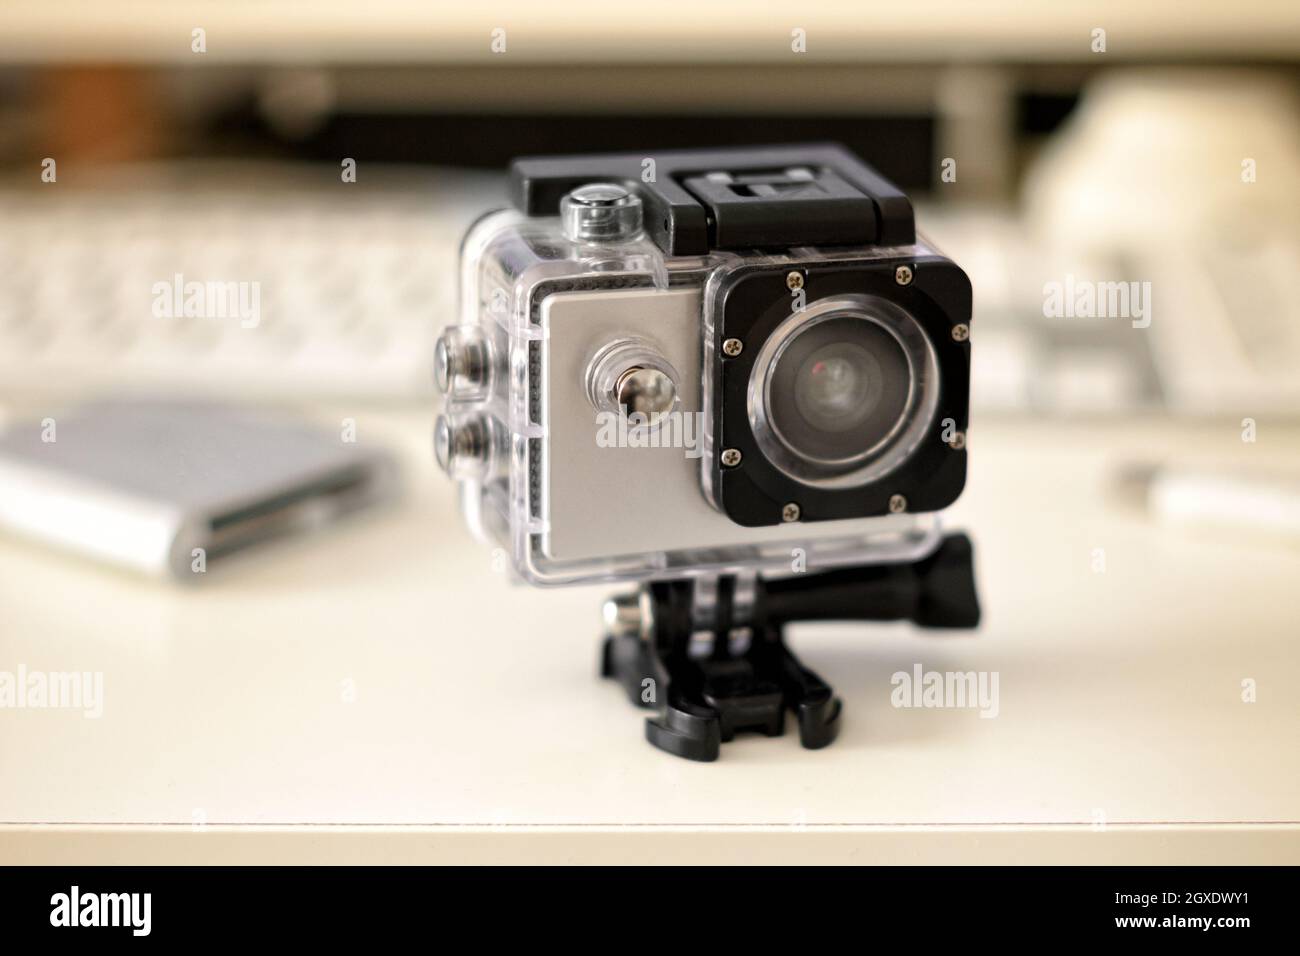 Gros plan sur une caméra embarquée compacte et robuste sur un support pour enregistrer des scènes d'action immersives en vidéo et en photographie Banque D'Images